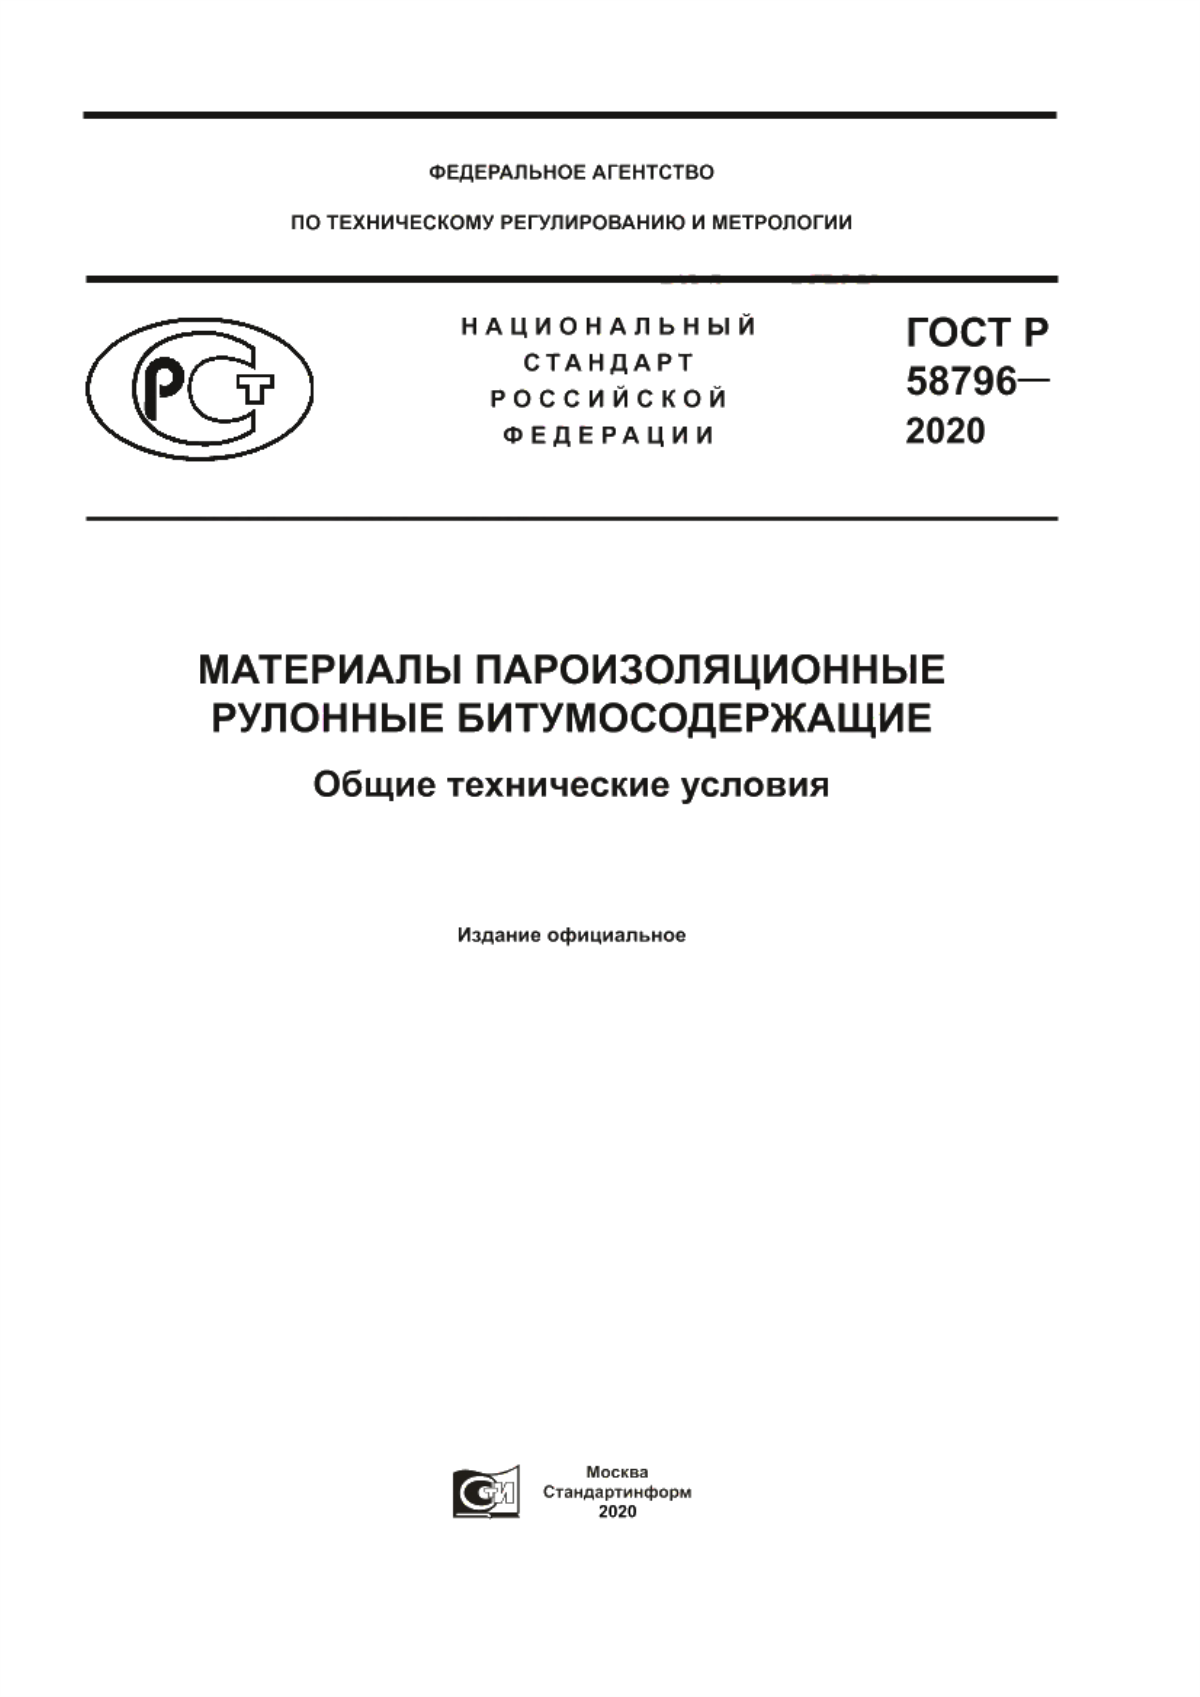 ГОСТ Р 58796-2020 Материалы пароизоляционные рулонные битумосодержащие. Общие технические условия